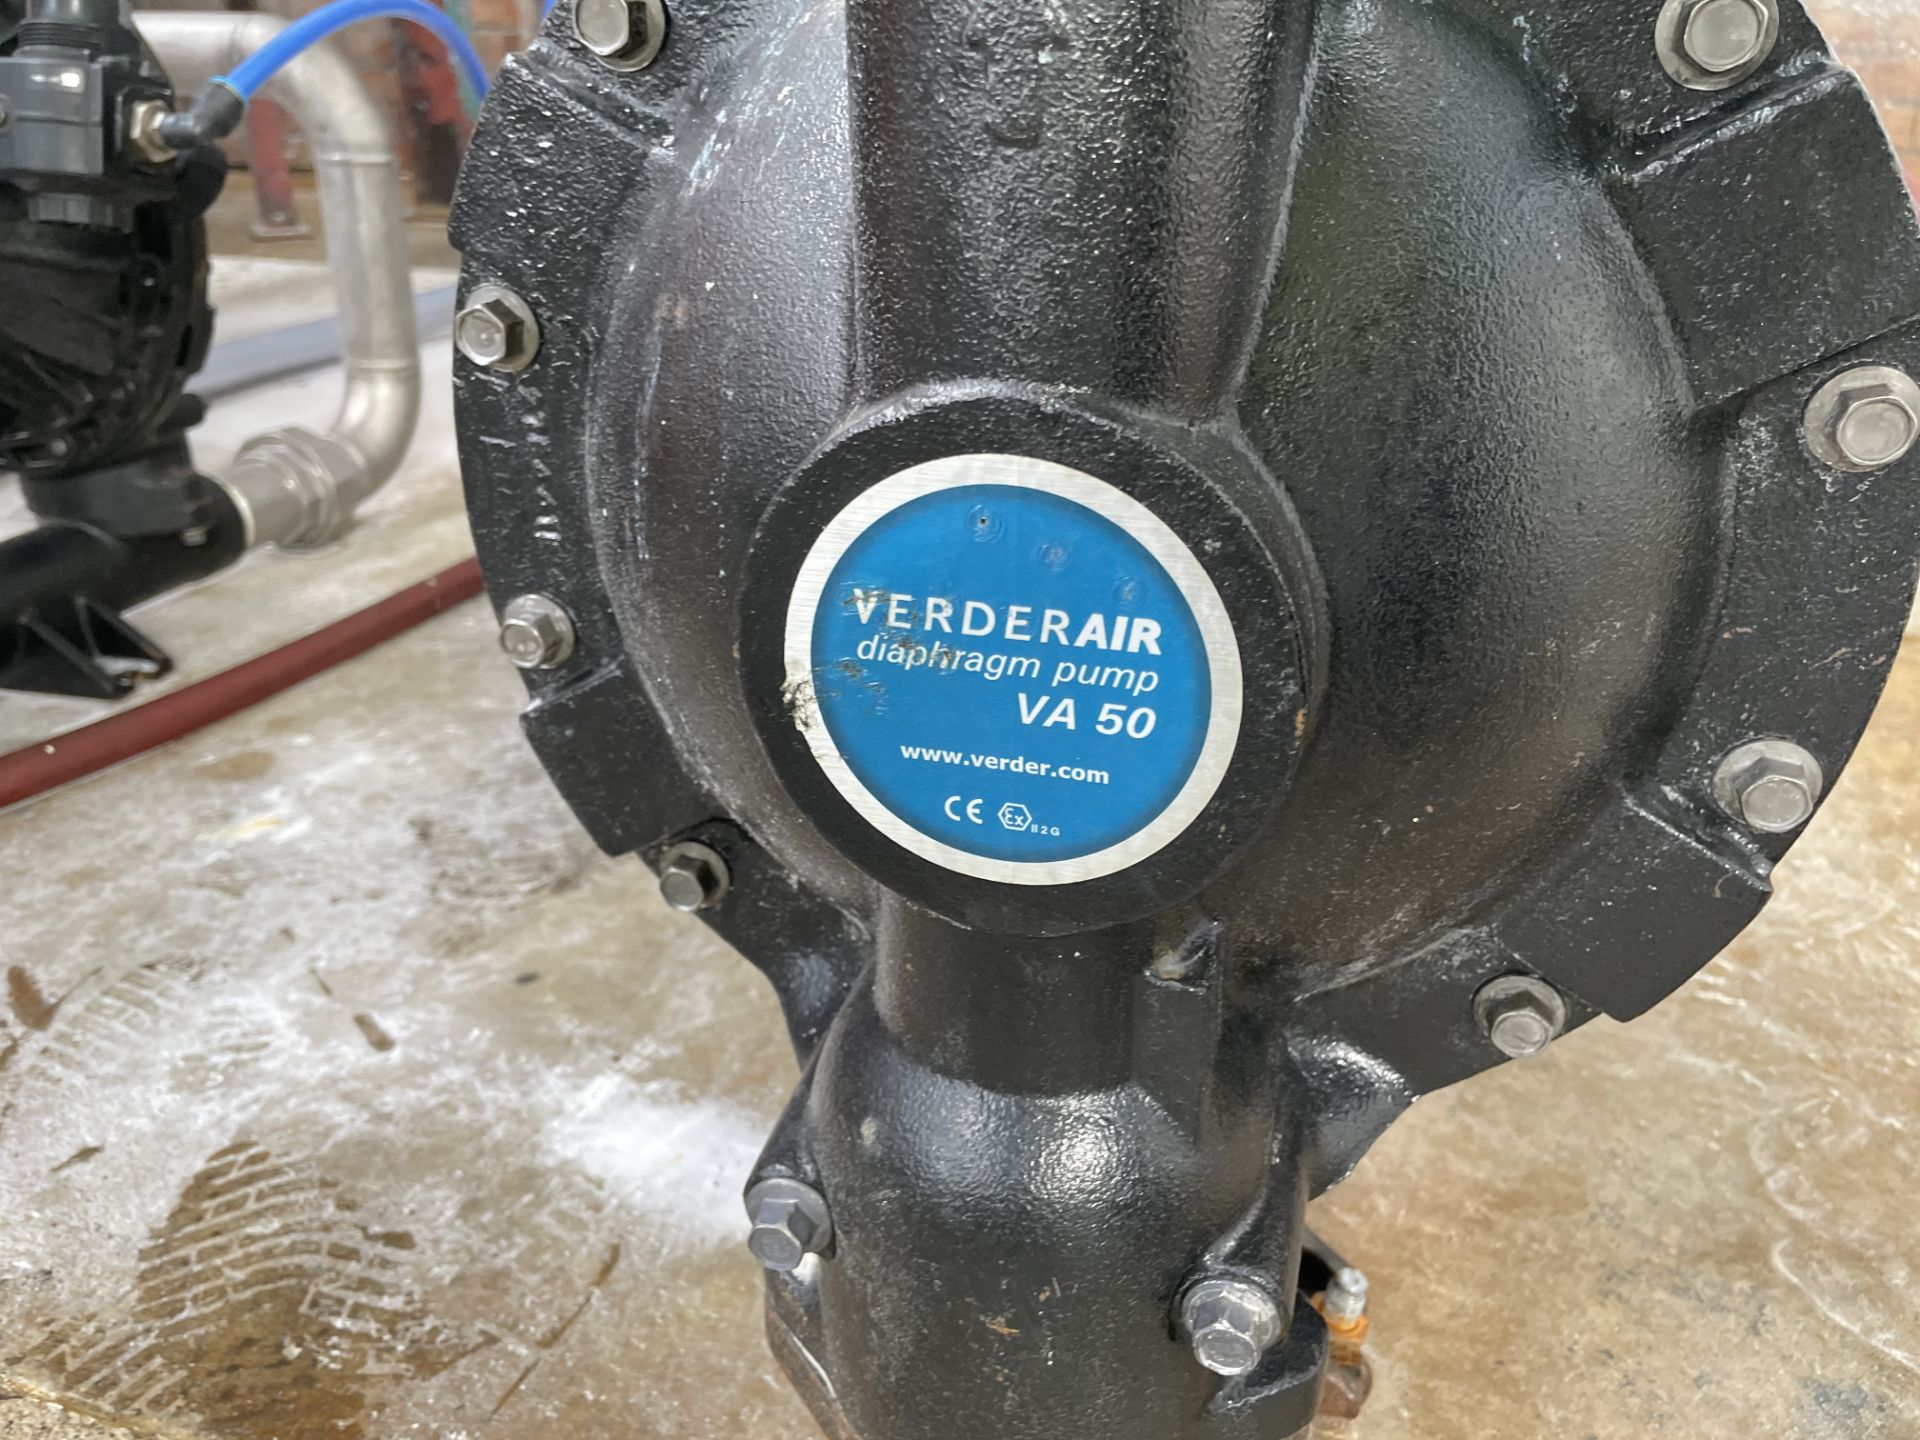 Verderair VA50 Diaphragm Pump (Contractors take out charge - £20) Please read the following - Bild 2 aus 2